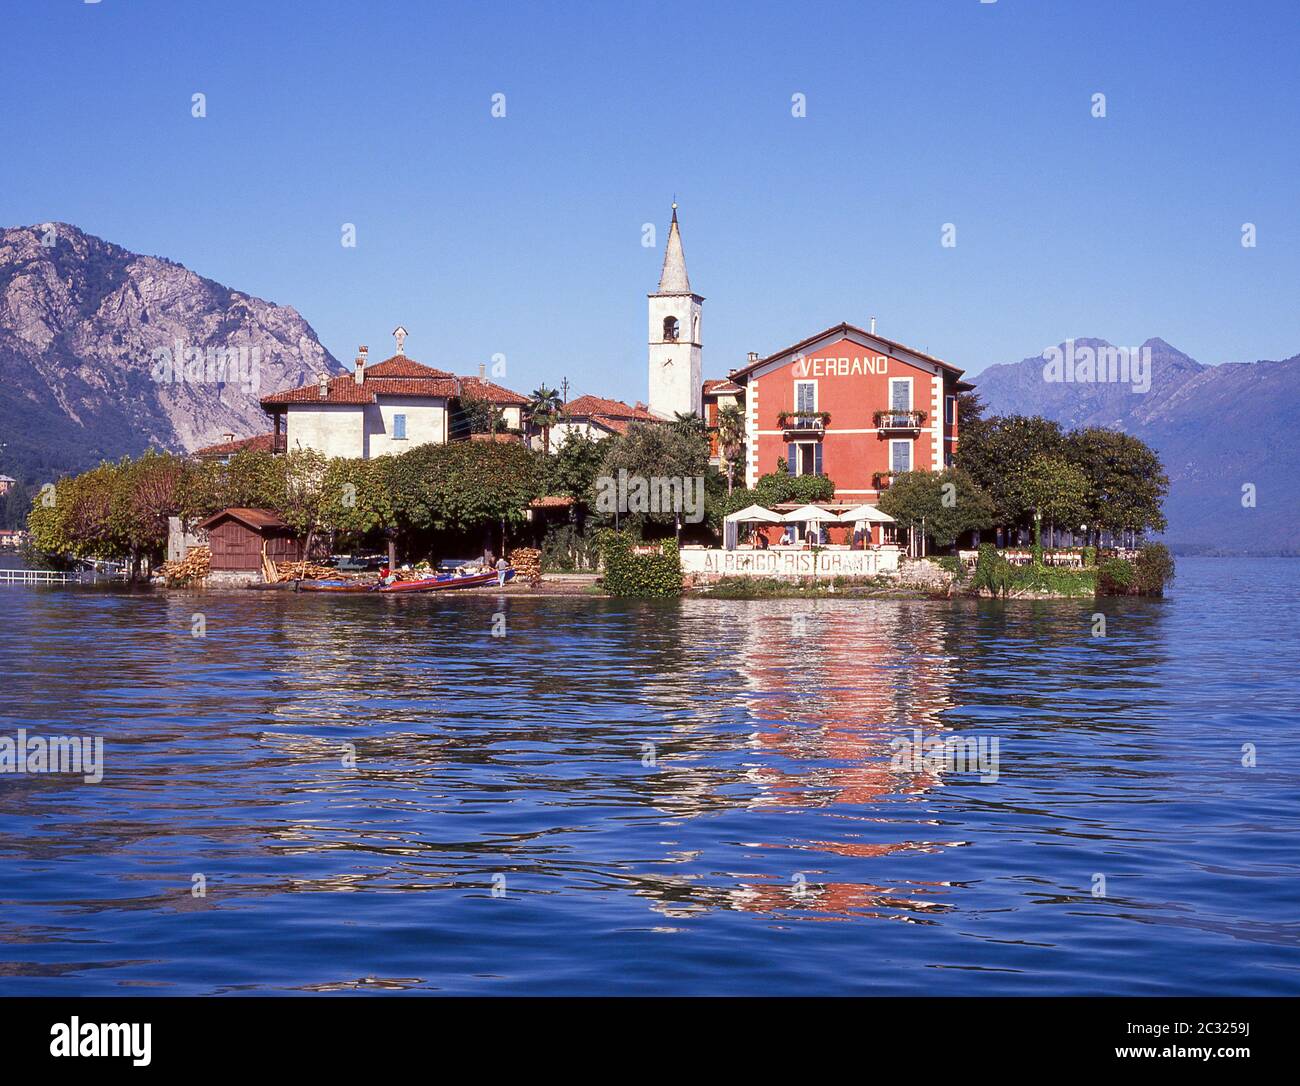 Isloa Pescatori (Fischerinsel), Lago Maggiore, Provinz Verbano-Cusio-Ossola, Piemonte (Piemont) Region, Italien Stockfoto